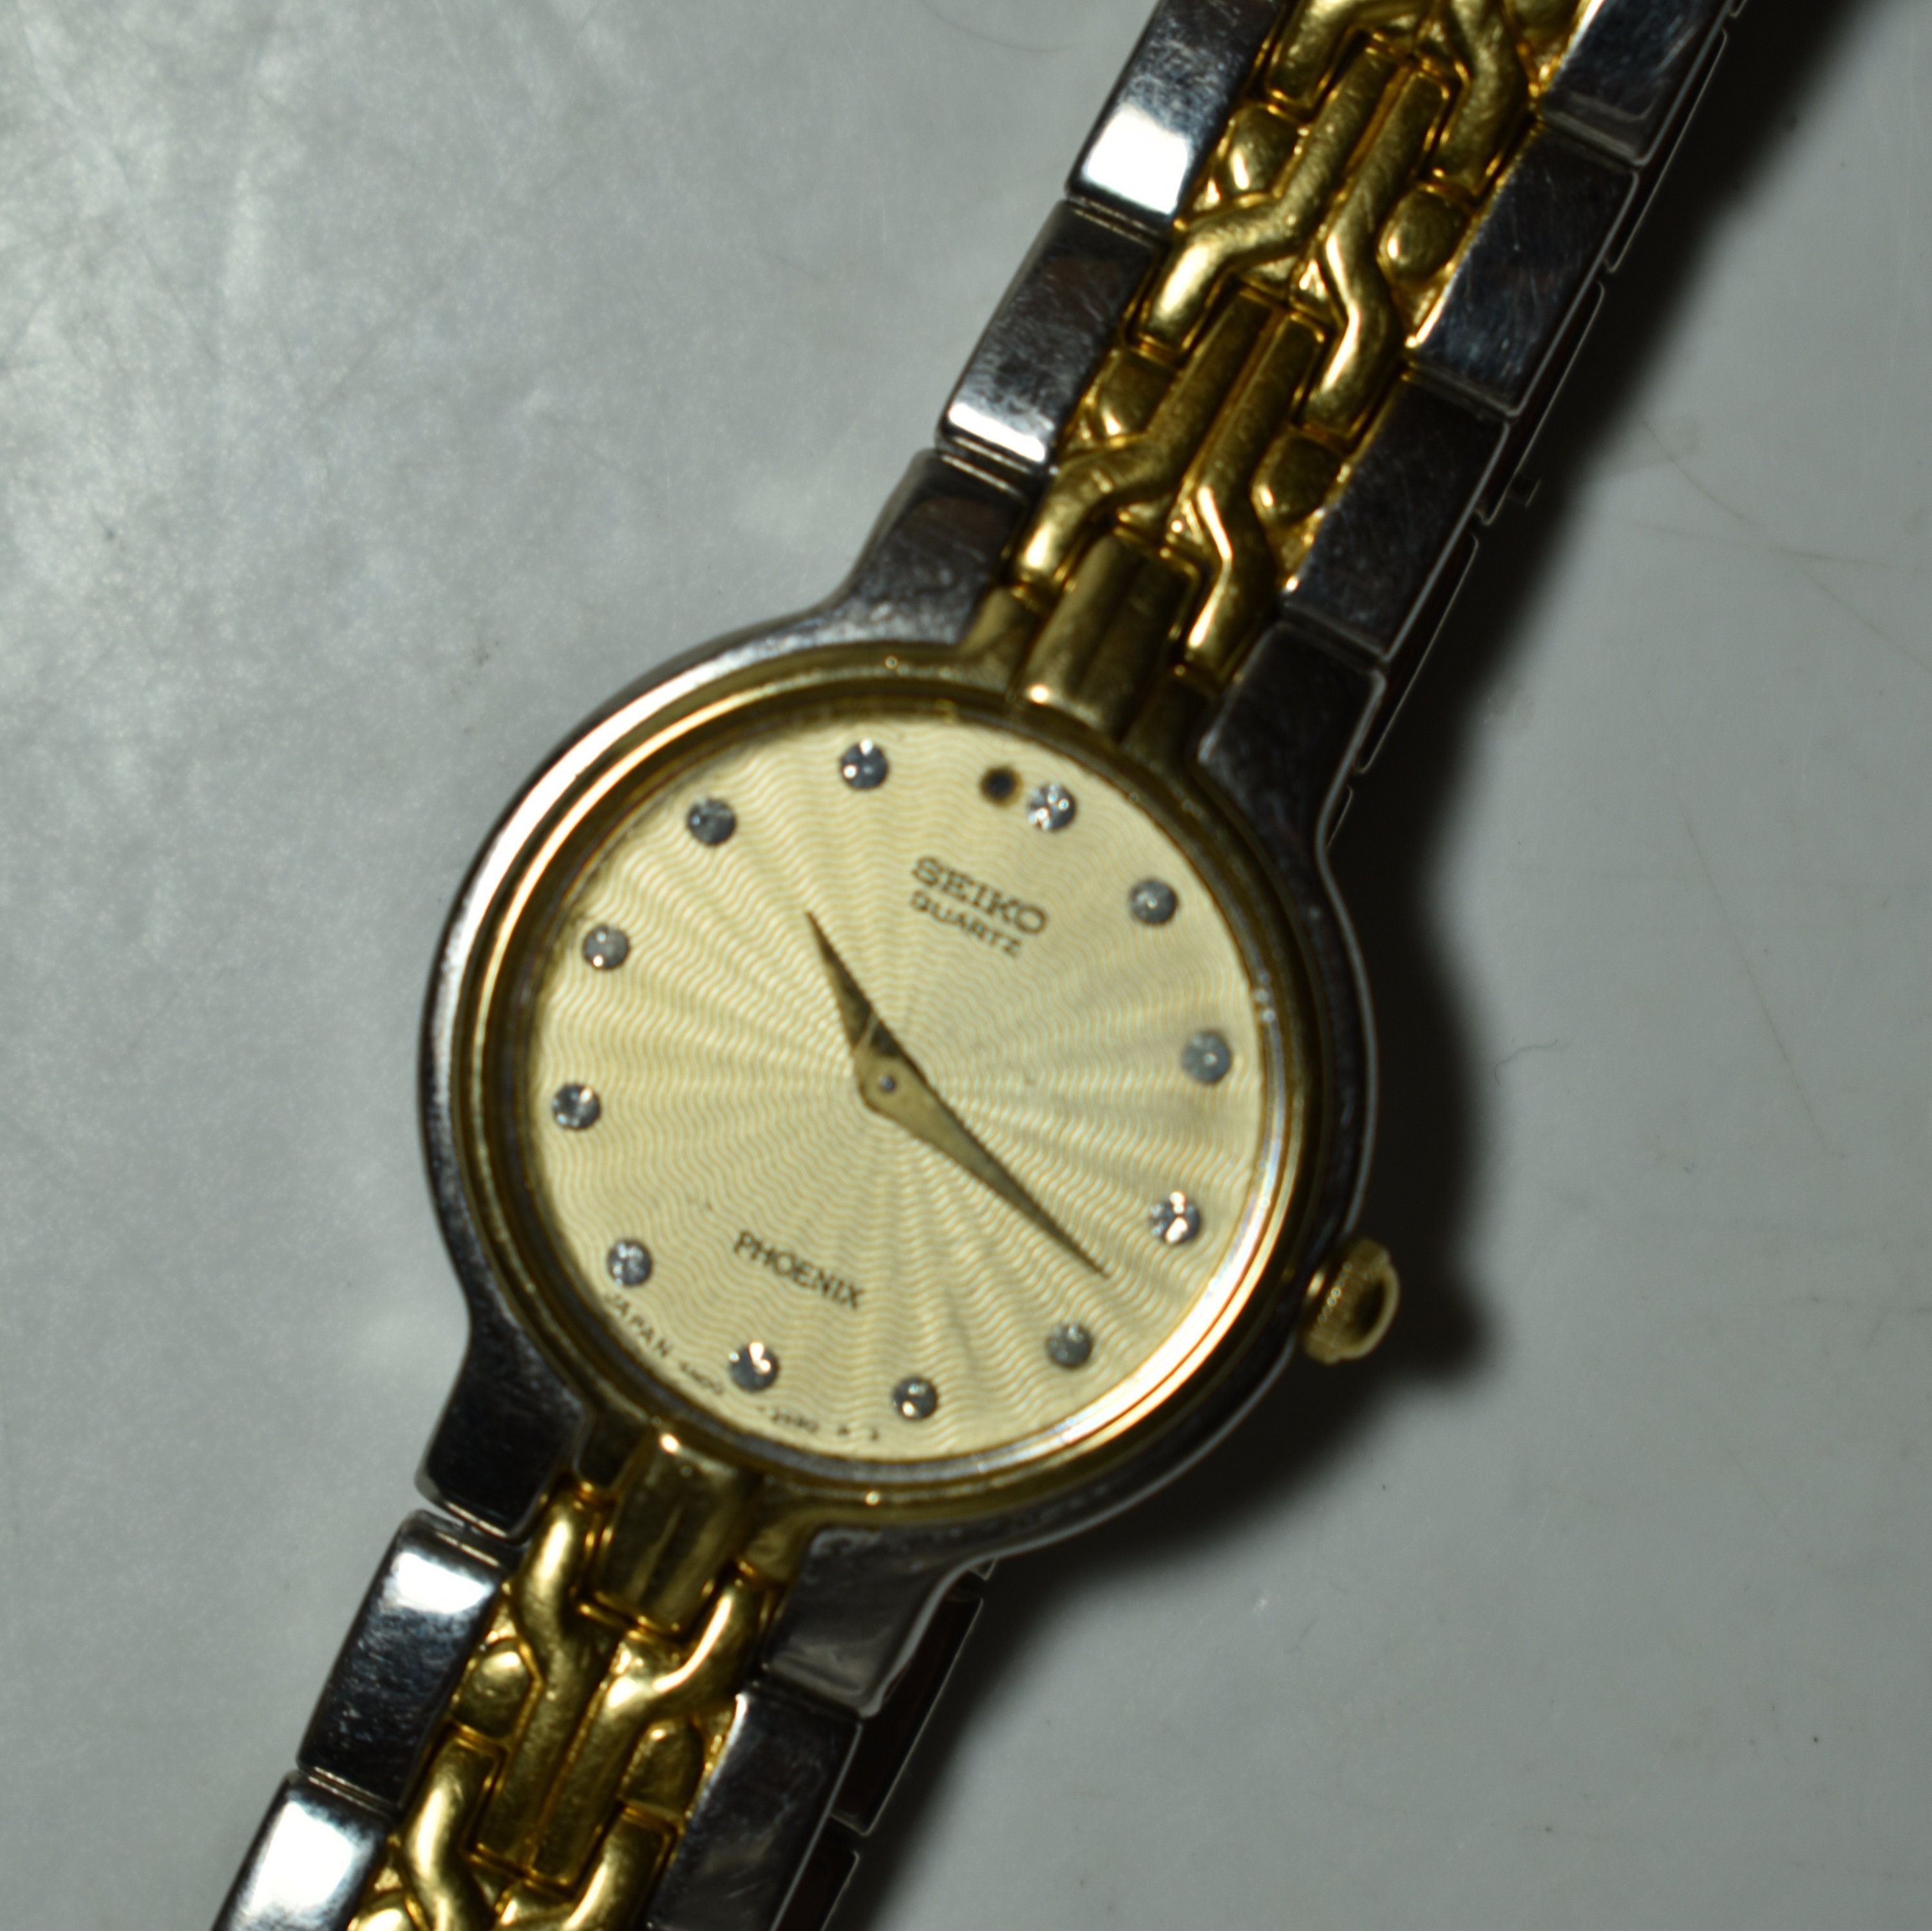 Vintage Seiko Quartz Watch Phoenix Japan 4N00-1050 Water - Etsy Sweden